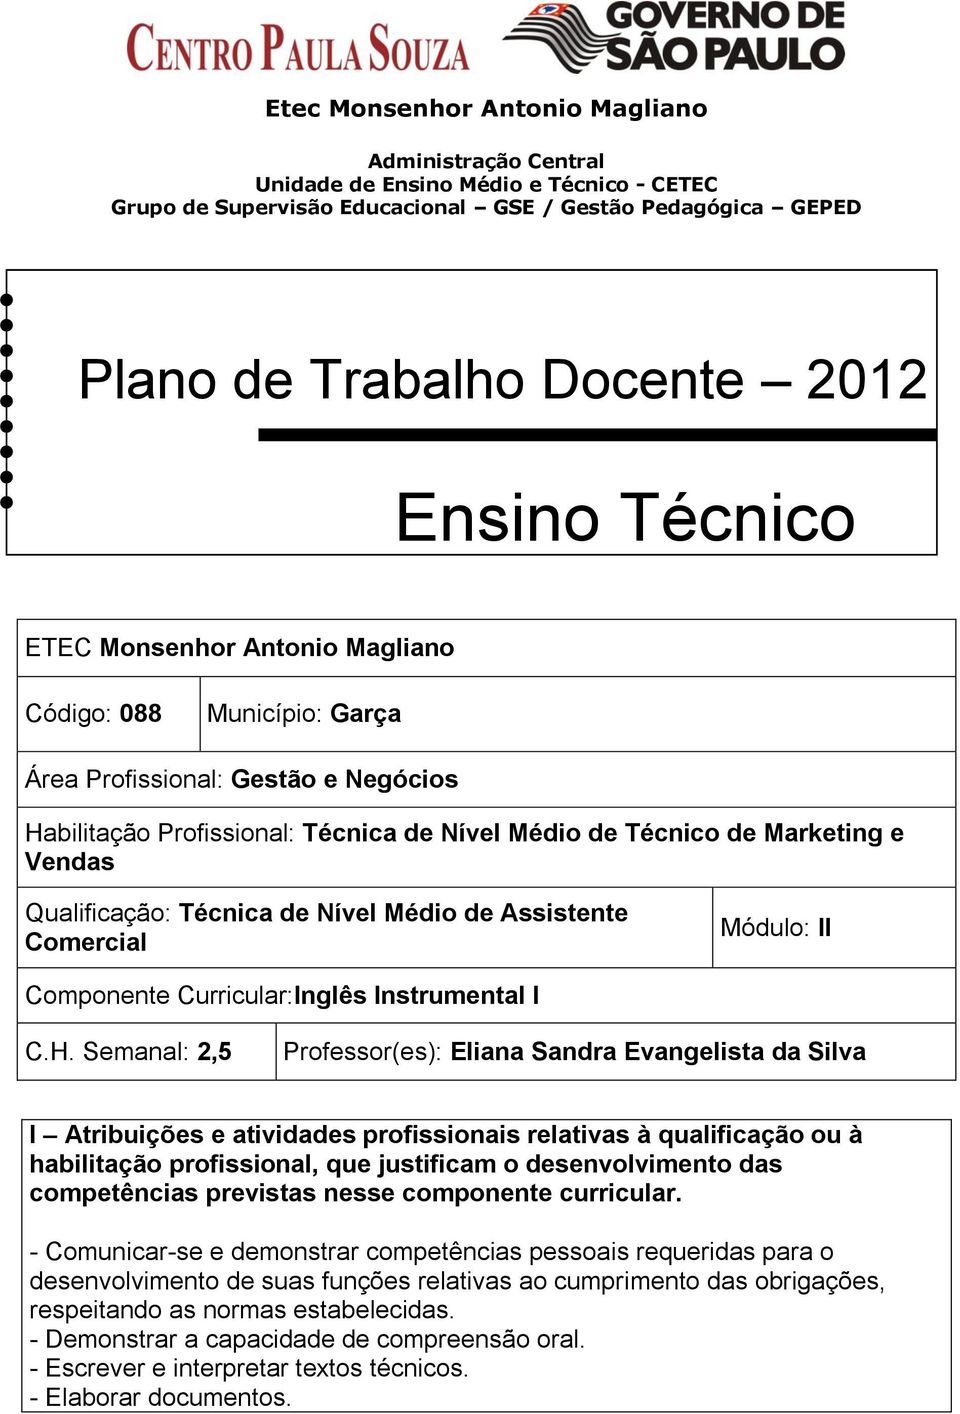 Qualificação: Técnica de Nível Médio de Assistente Comercial Componente Curricular:Inglês Instrumental I C.H.